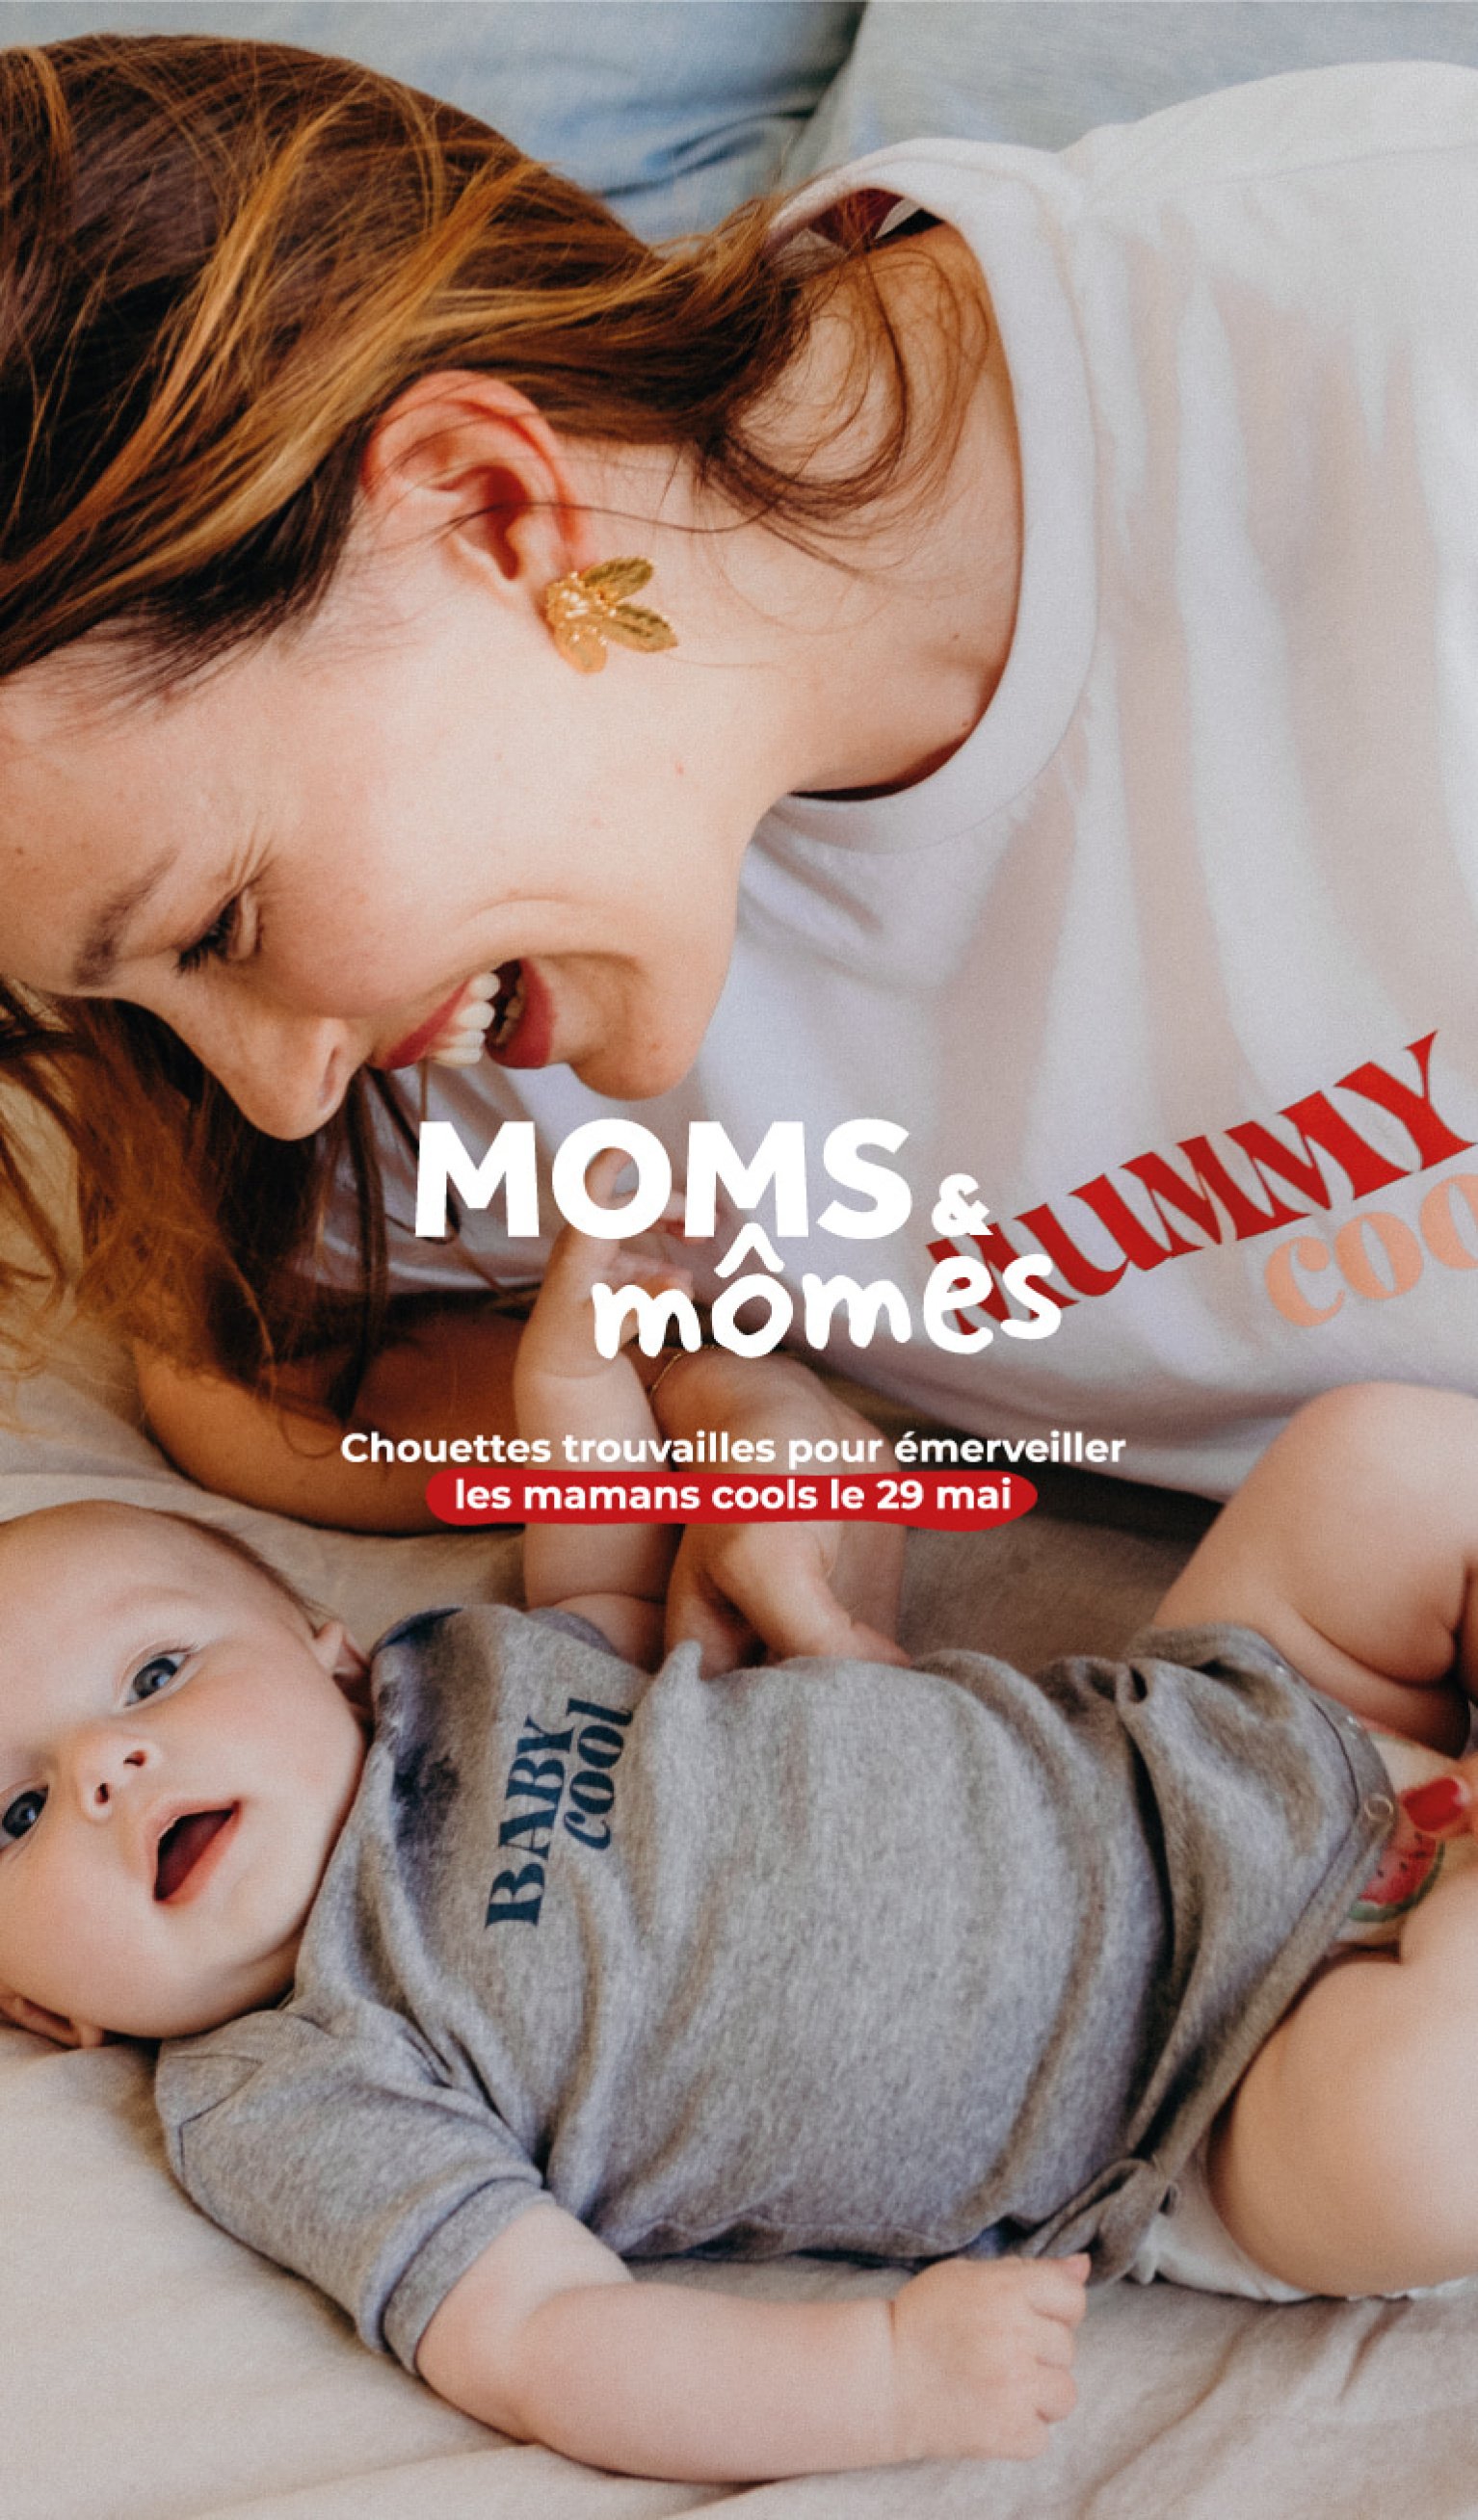 Bonne fête maman : 10 idées bien-être en duo mère-fille